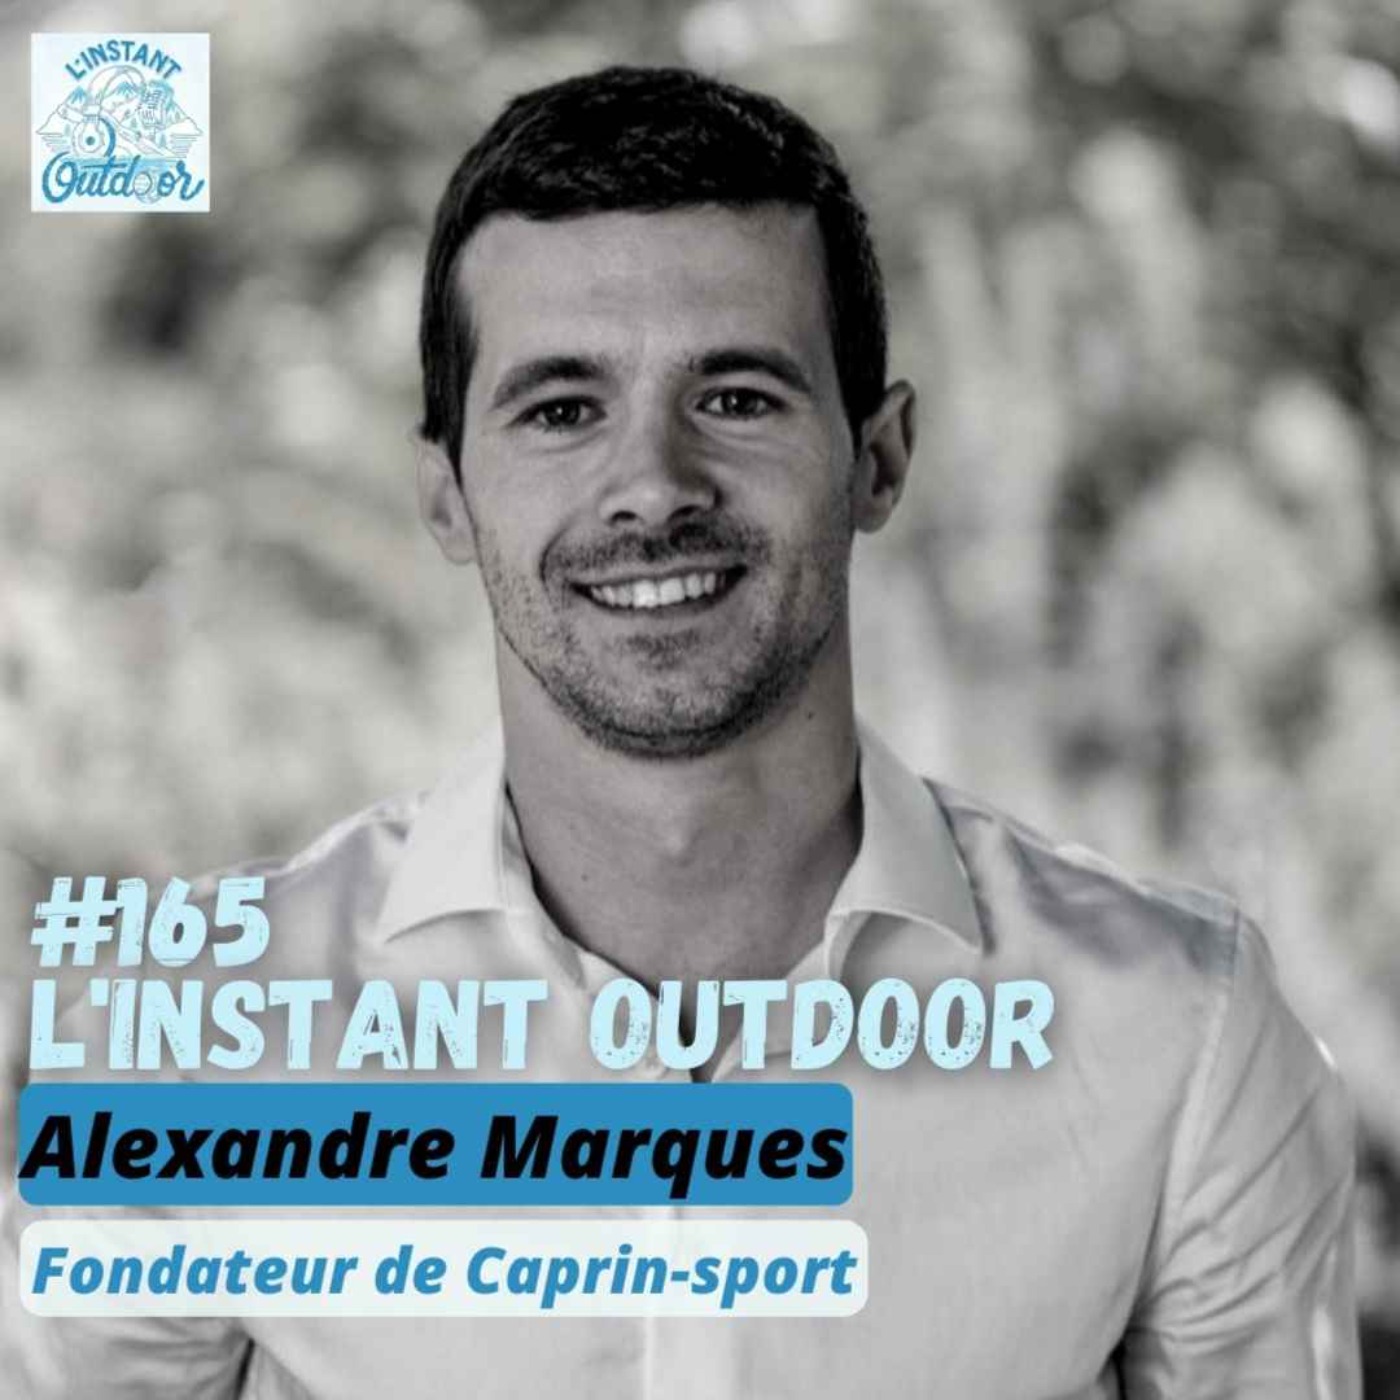 Alexandre Marques - Fondateur de Caprin-sport allier conscience et performance